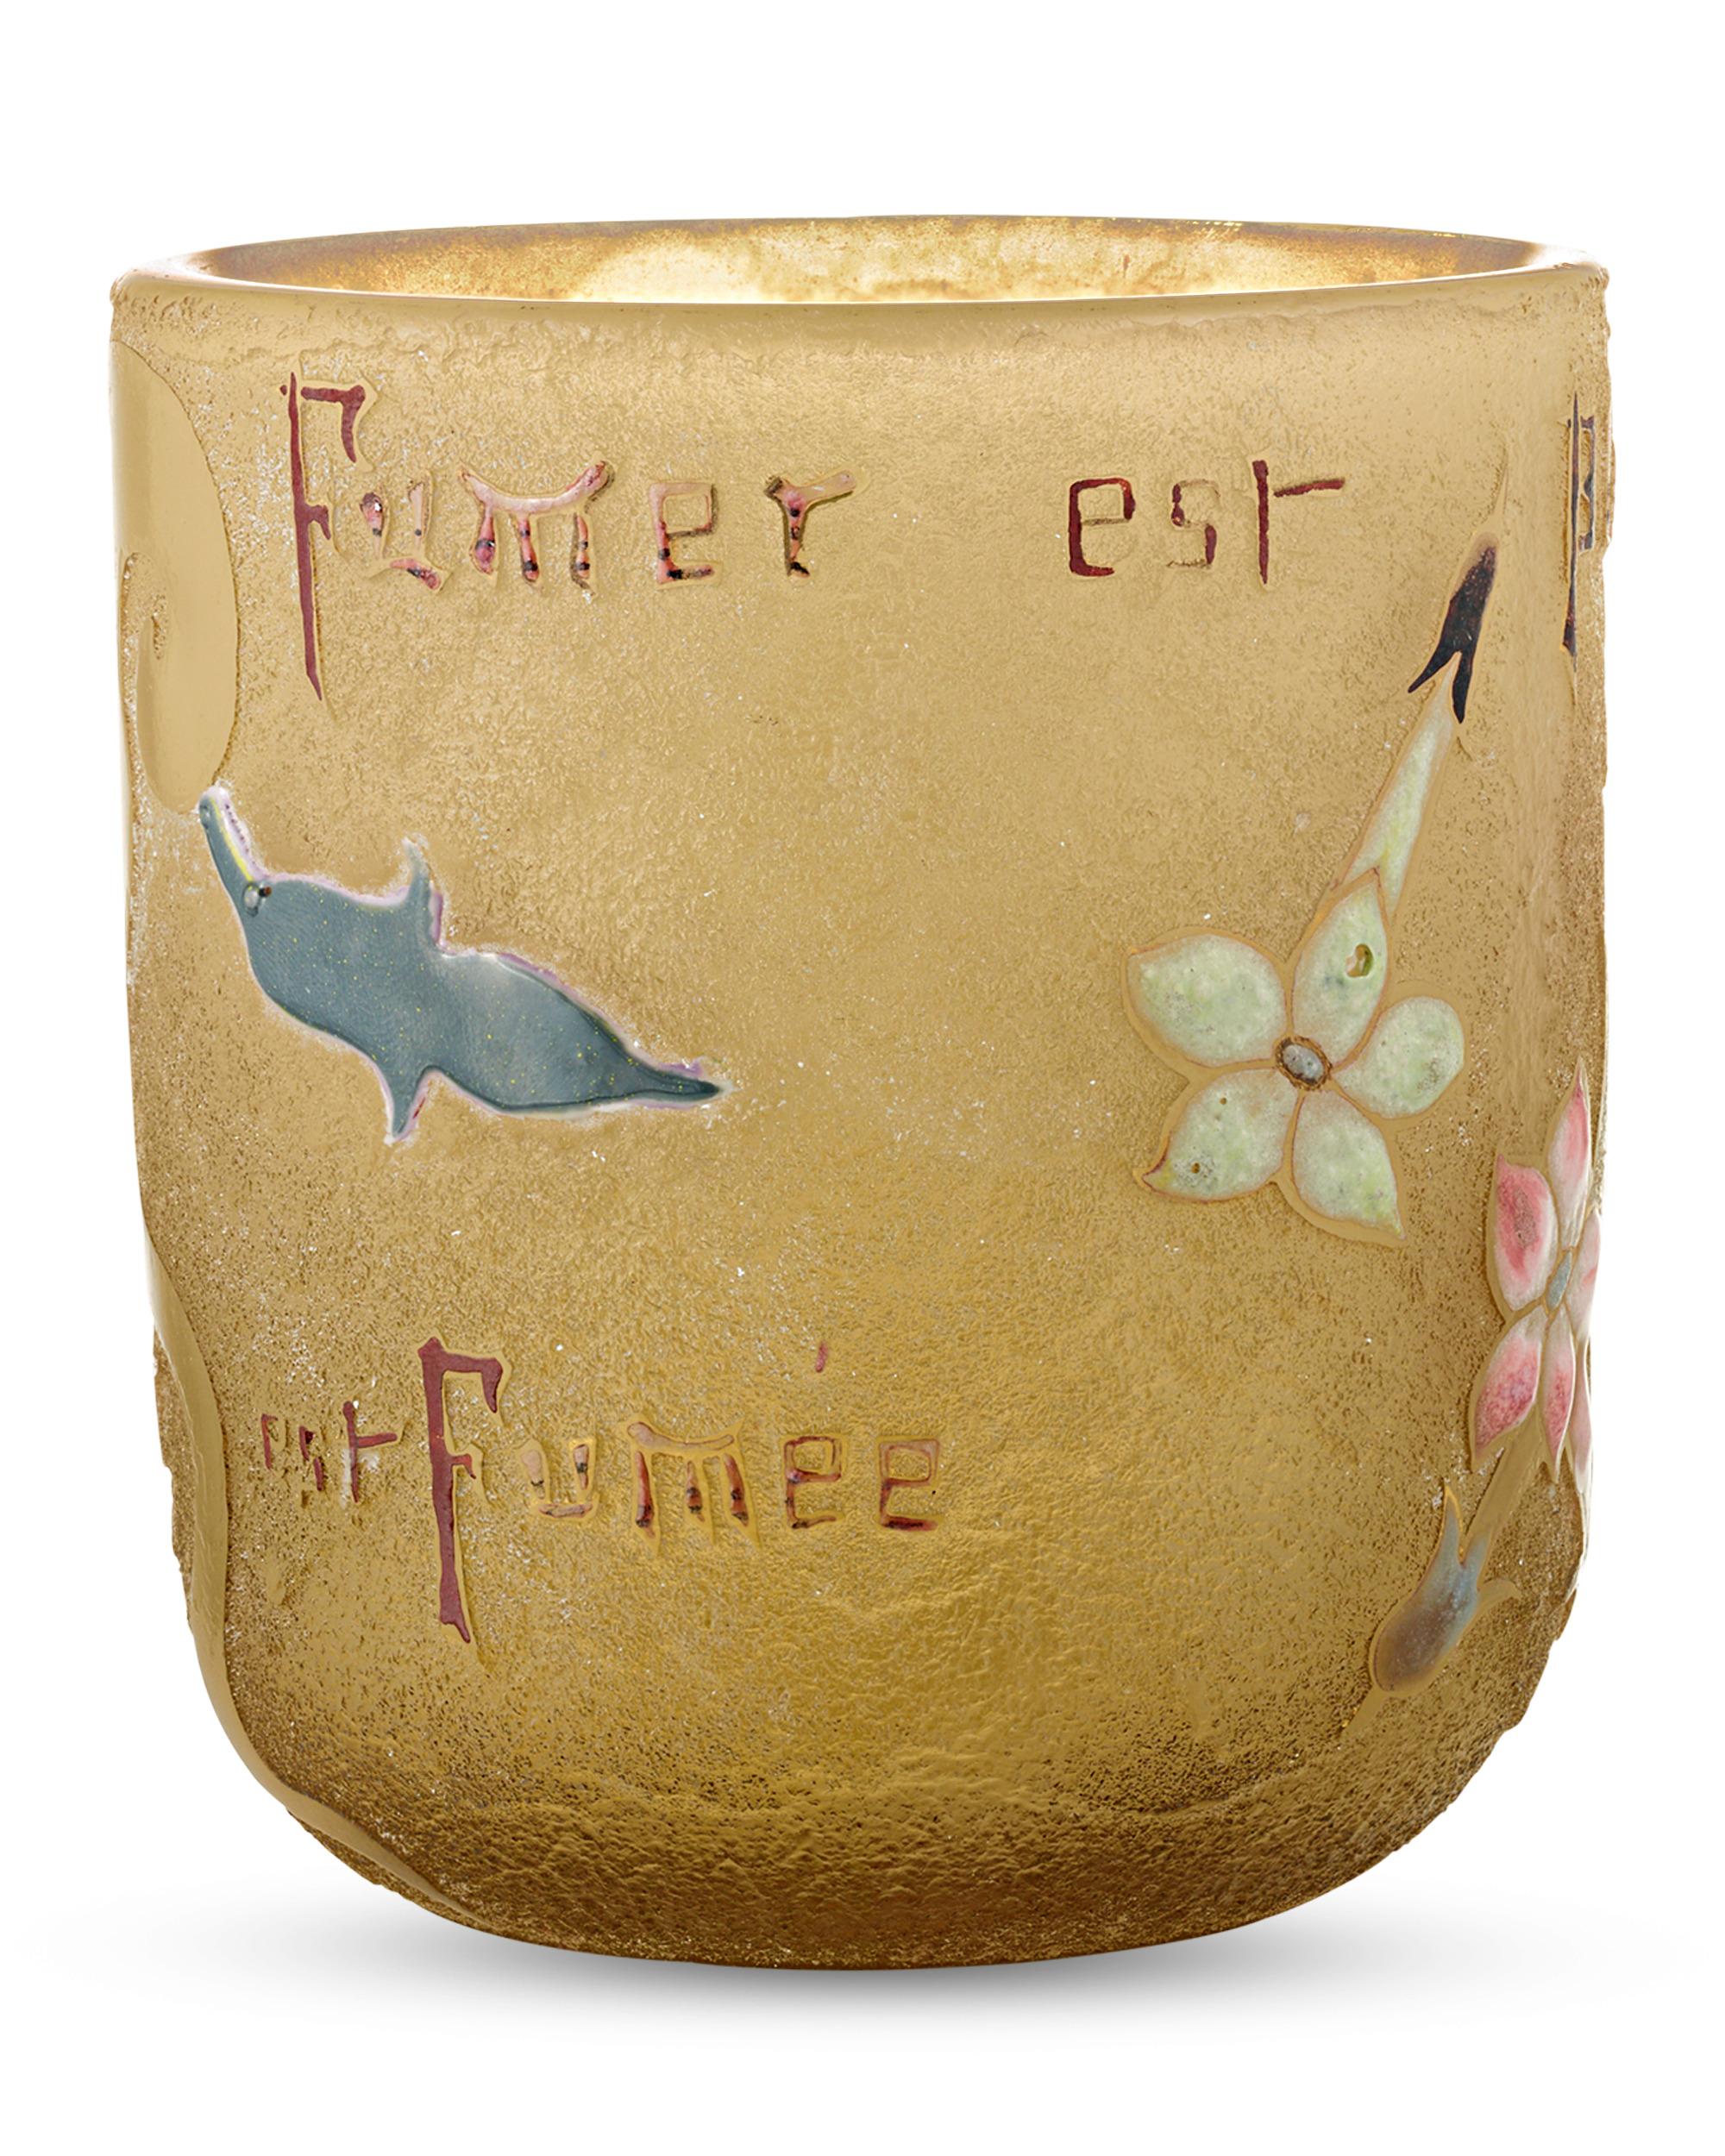 Ce remarquable vase gravé à l'acide est l'œuvre du célèbre maître de l'Art nouveau Émile Gallé, l'un des noms les plus réputés de la verrerie française. L'amour de l'artiste pour la Nature est évident dans le rendu détaillé des fleurs épanouies qui